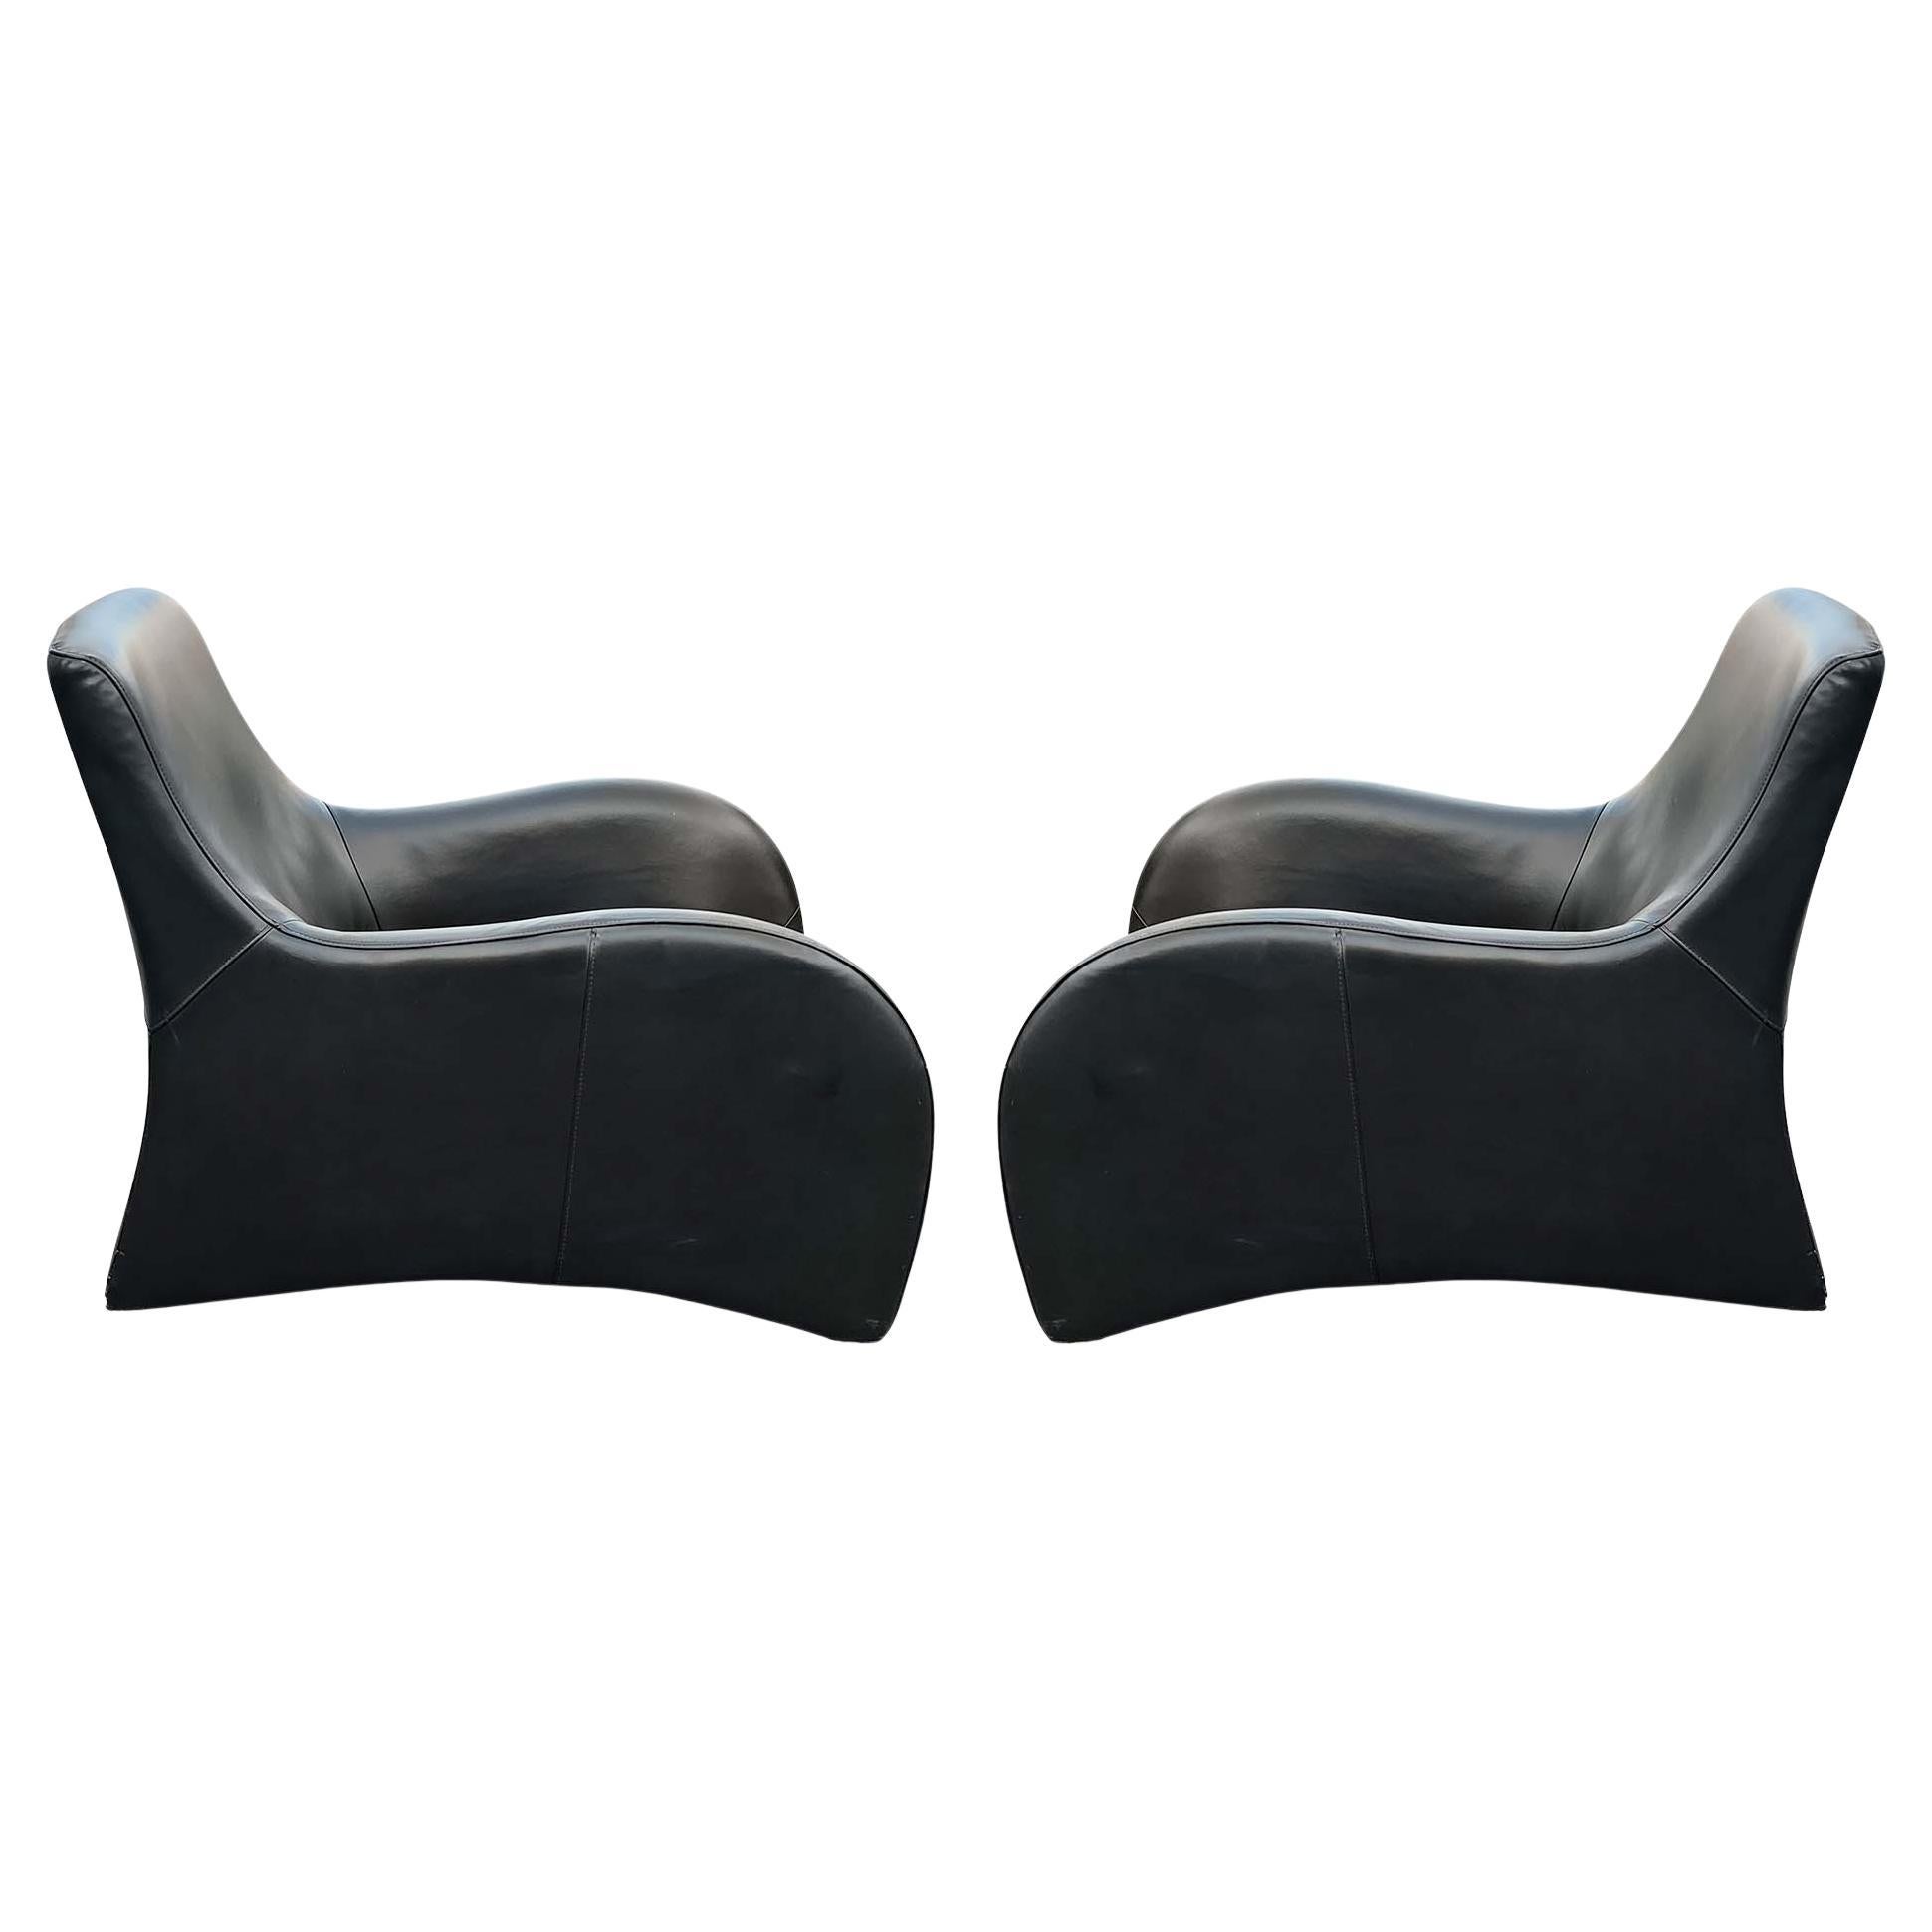 Une paire de fauteuils de salon ou fauteuils club aux courbes très prononcées, en cuir noir surpiqué, reposant sur des pieds discrets en métal chromé. Ces chaises ressemblent beaucoup à la version iconique rendue célèbre par le designer néerlandais